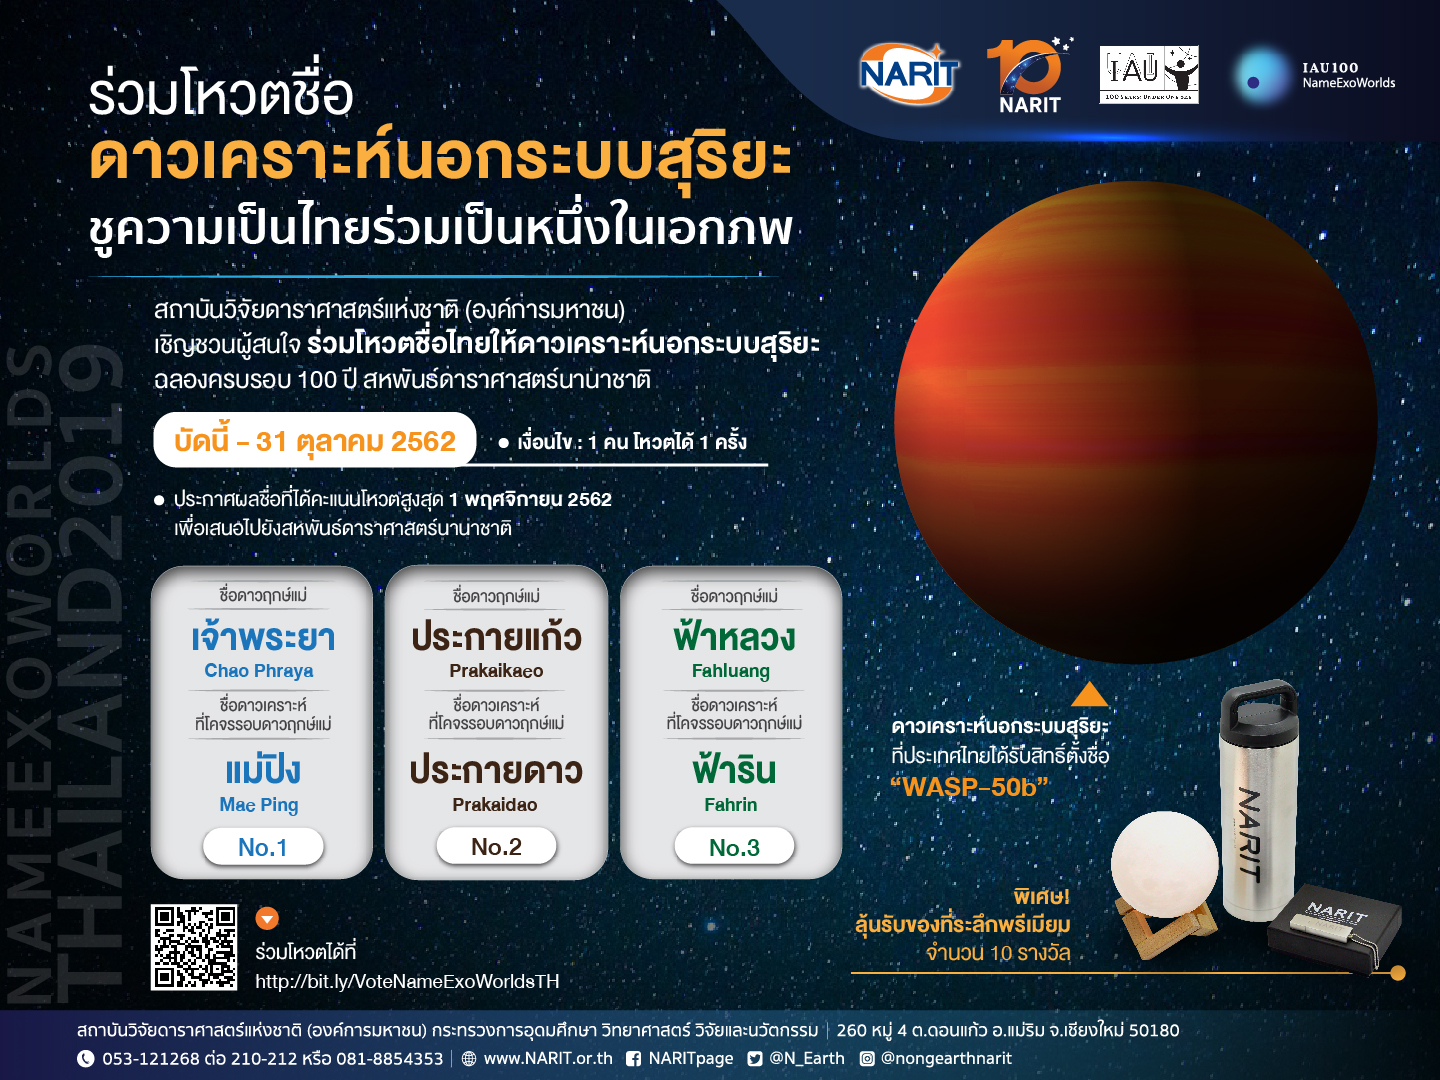 ชวนร่วมตั้งชื่อดาวเคราะห์! สดร.คัด 3 ชื่อไทยให้ร่วมกันโหวตตั้งชื่อให้ดาวเคราะห์นอกระบบสุริยะหมดเขตสิ้นเดือนนี้